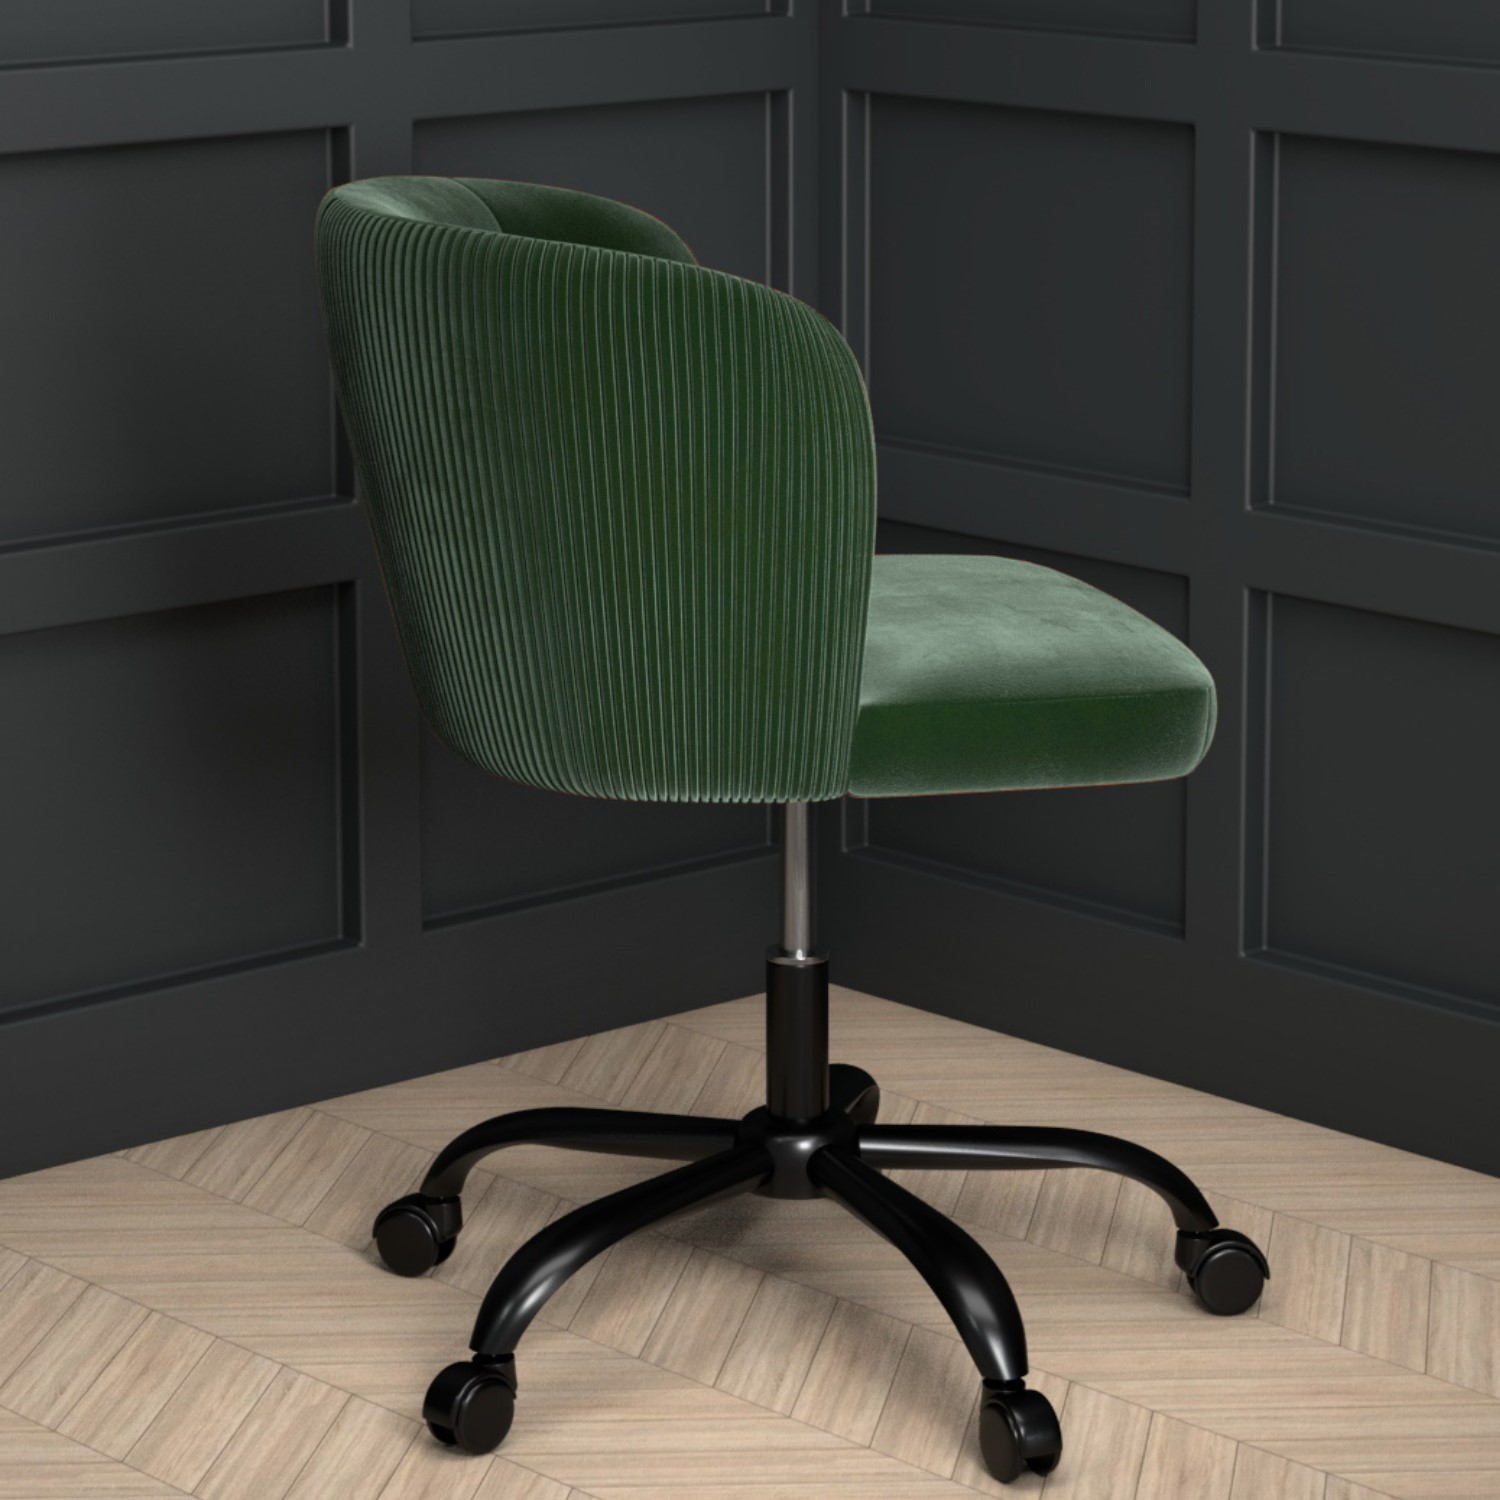 Green Velvet Office Chair With Swivel, Green Velvet Office Chair Uk